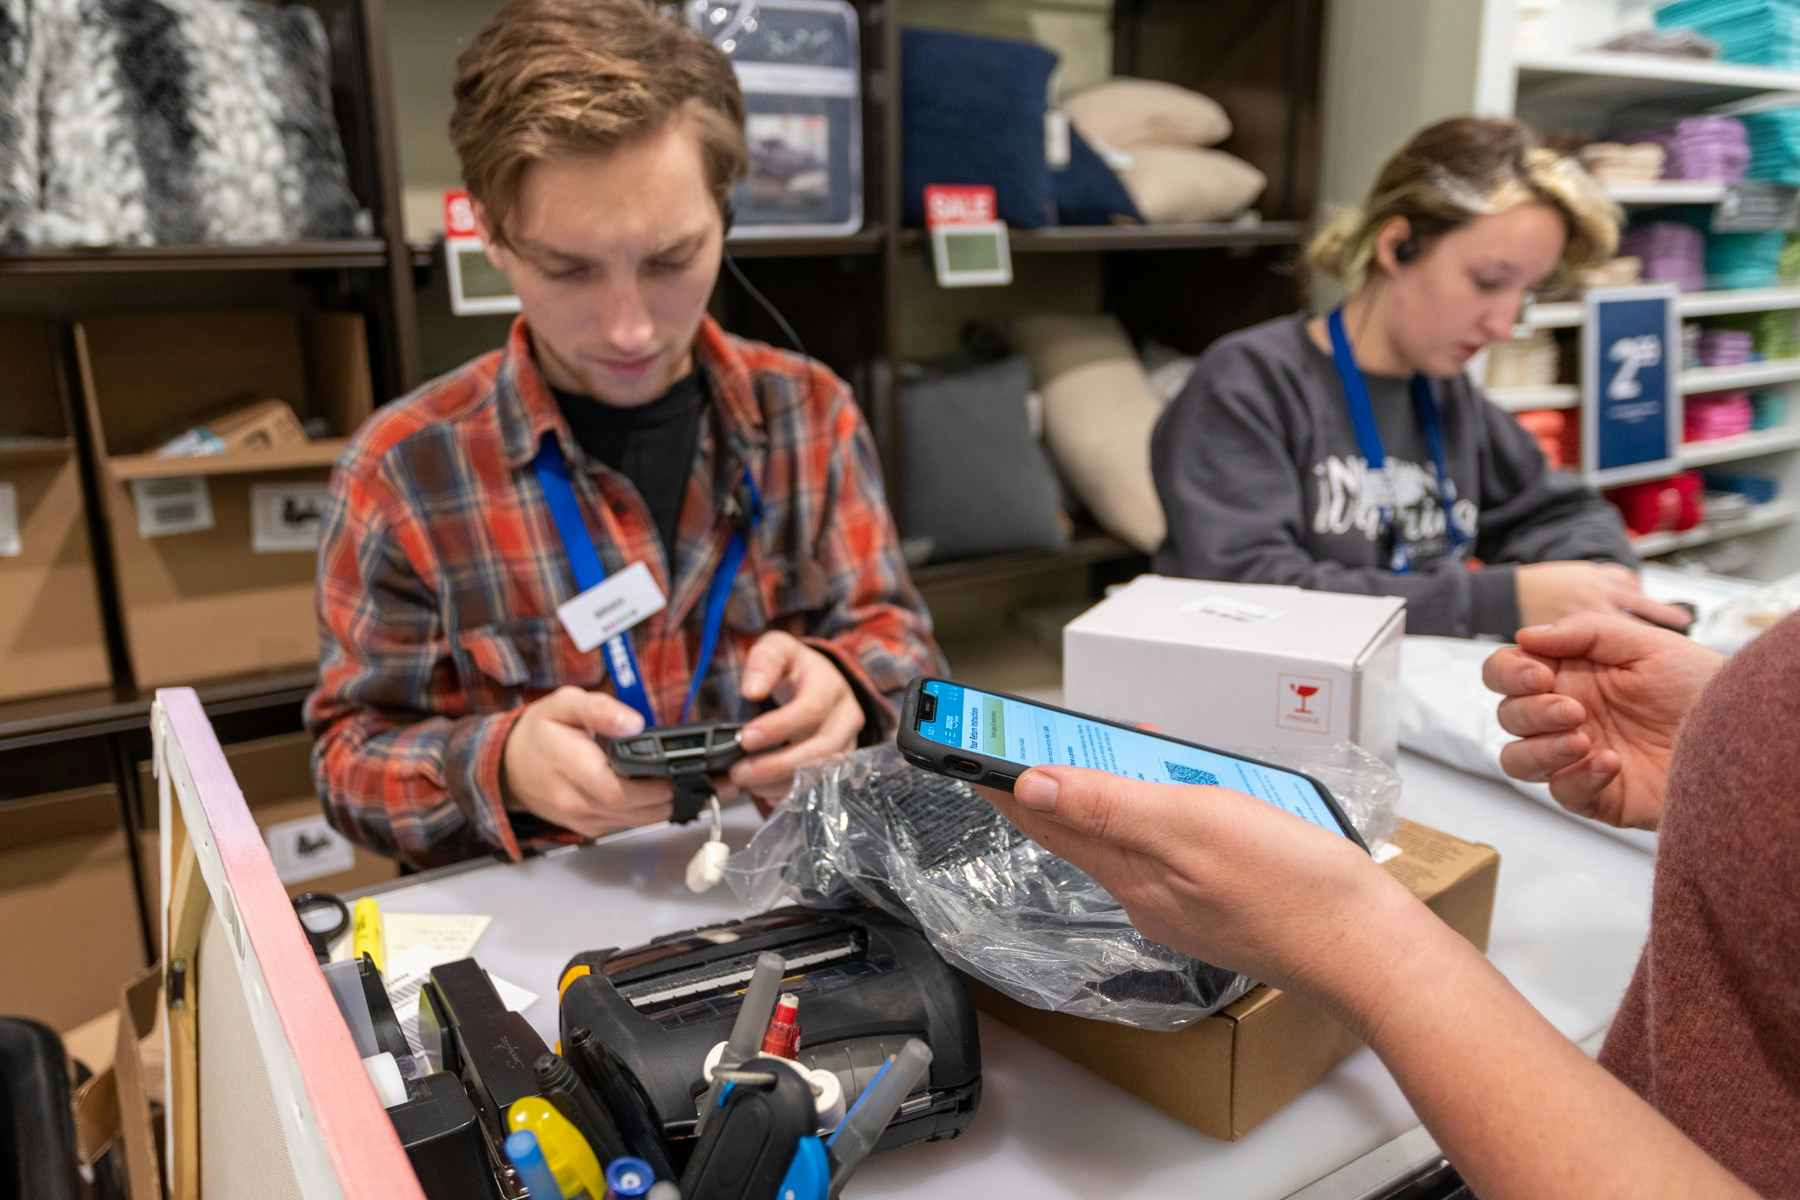 A Kohl's employee scanning in an Amazon return